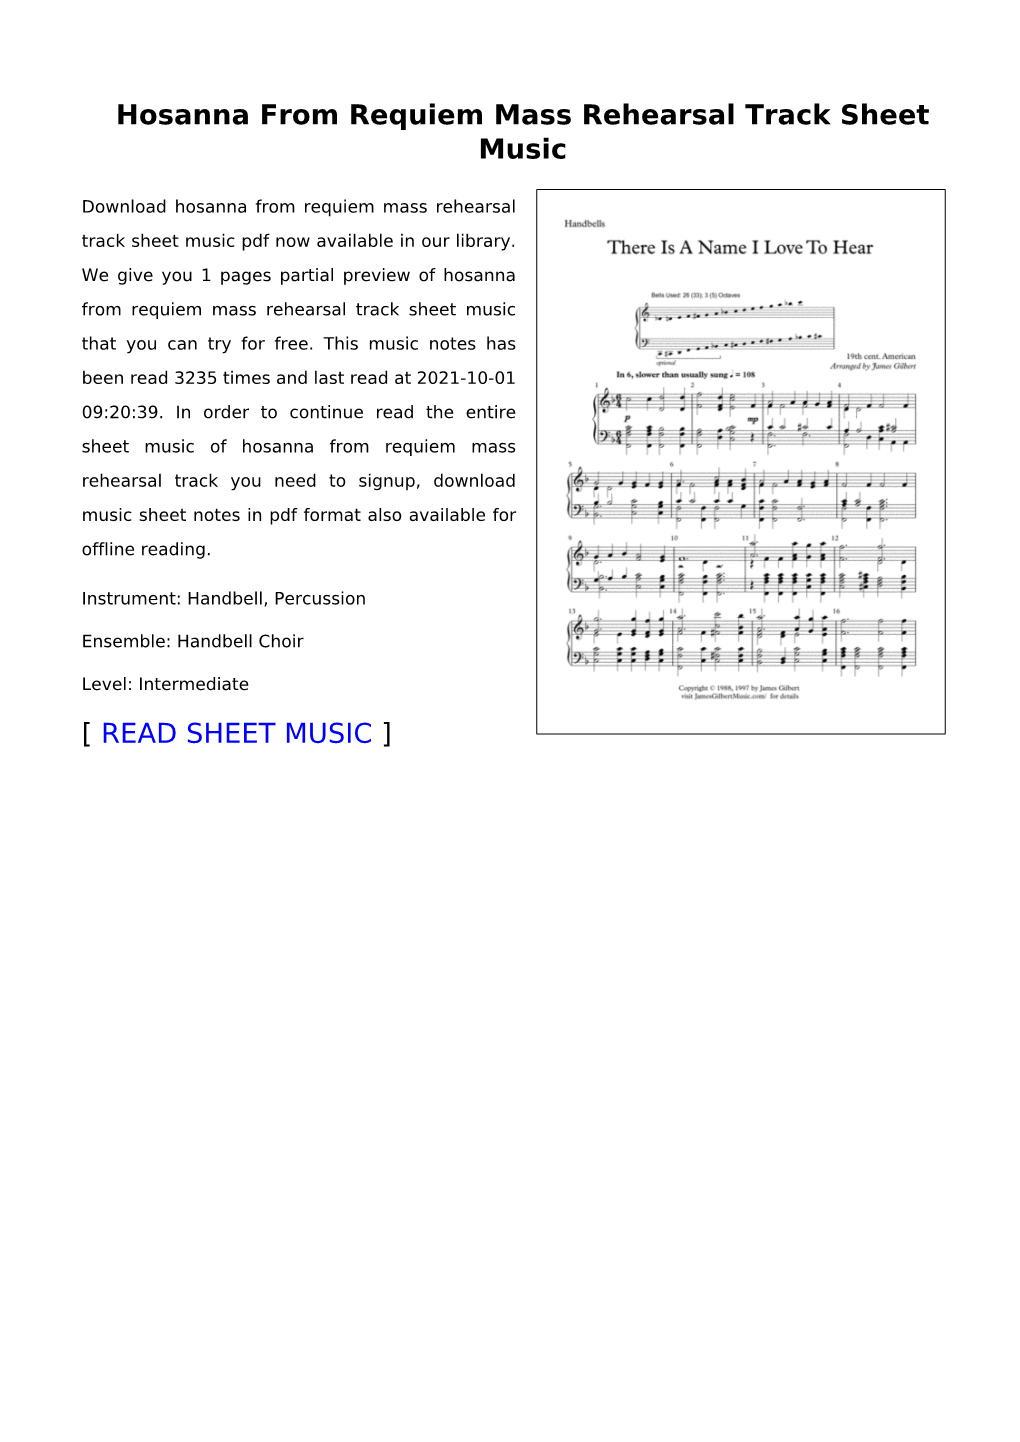 Hosanna from Requiem Mass Rehearsal Track Sheet Music